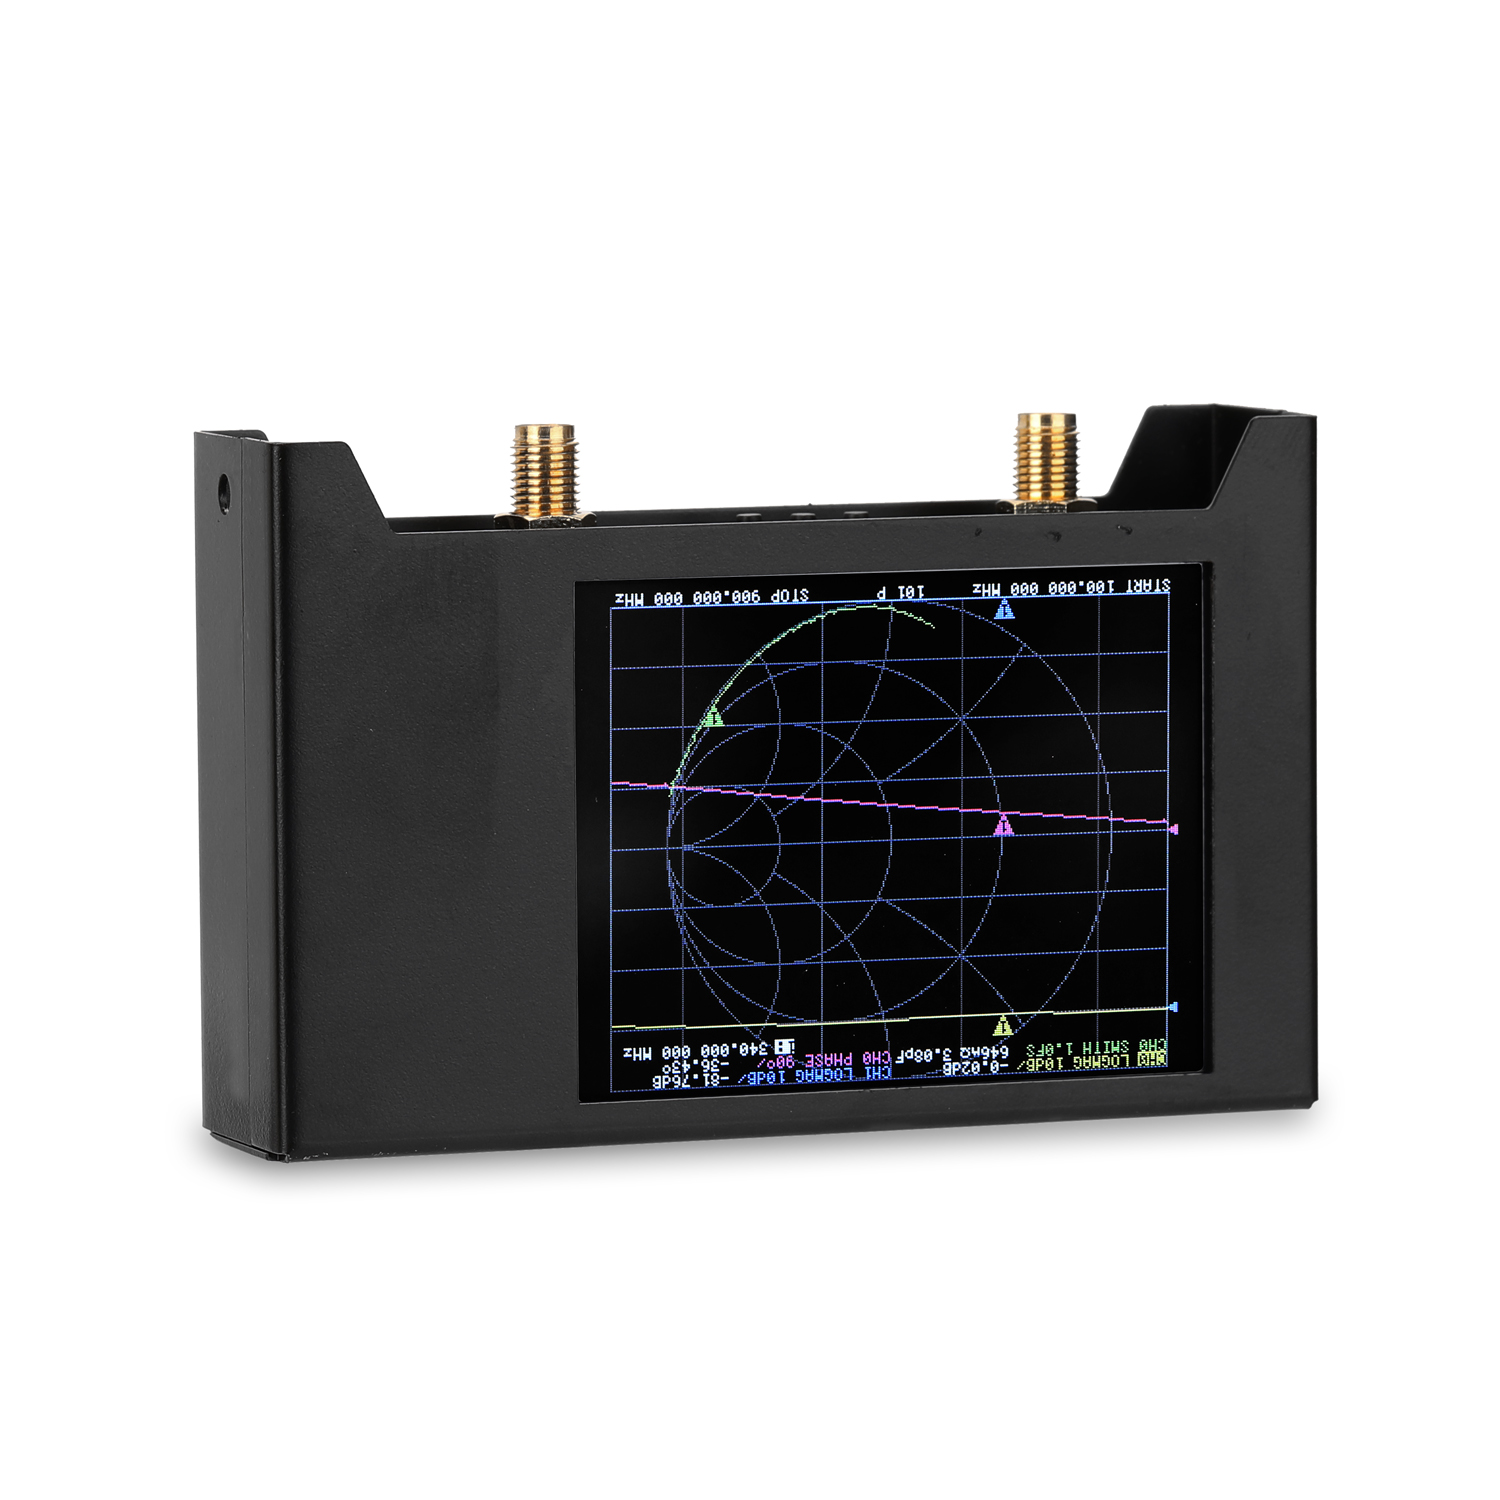 28-Inch-Screen-3G-50KHz-3GHz-Vector-Network-Analyzer-S-A-A-2-NanoVNA-V2-Antenna-Analyzer-Shortwave-H-1754279-9